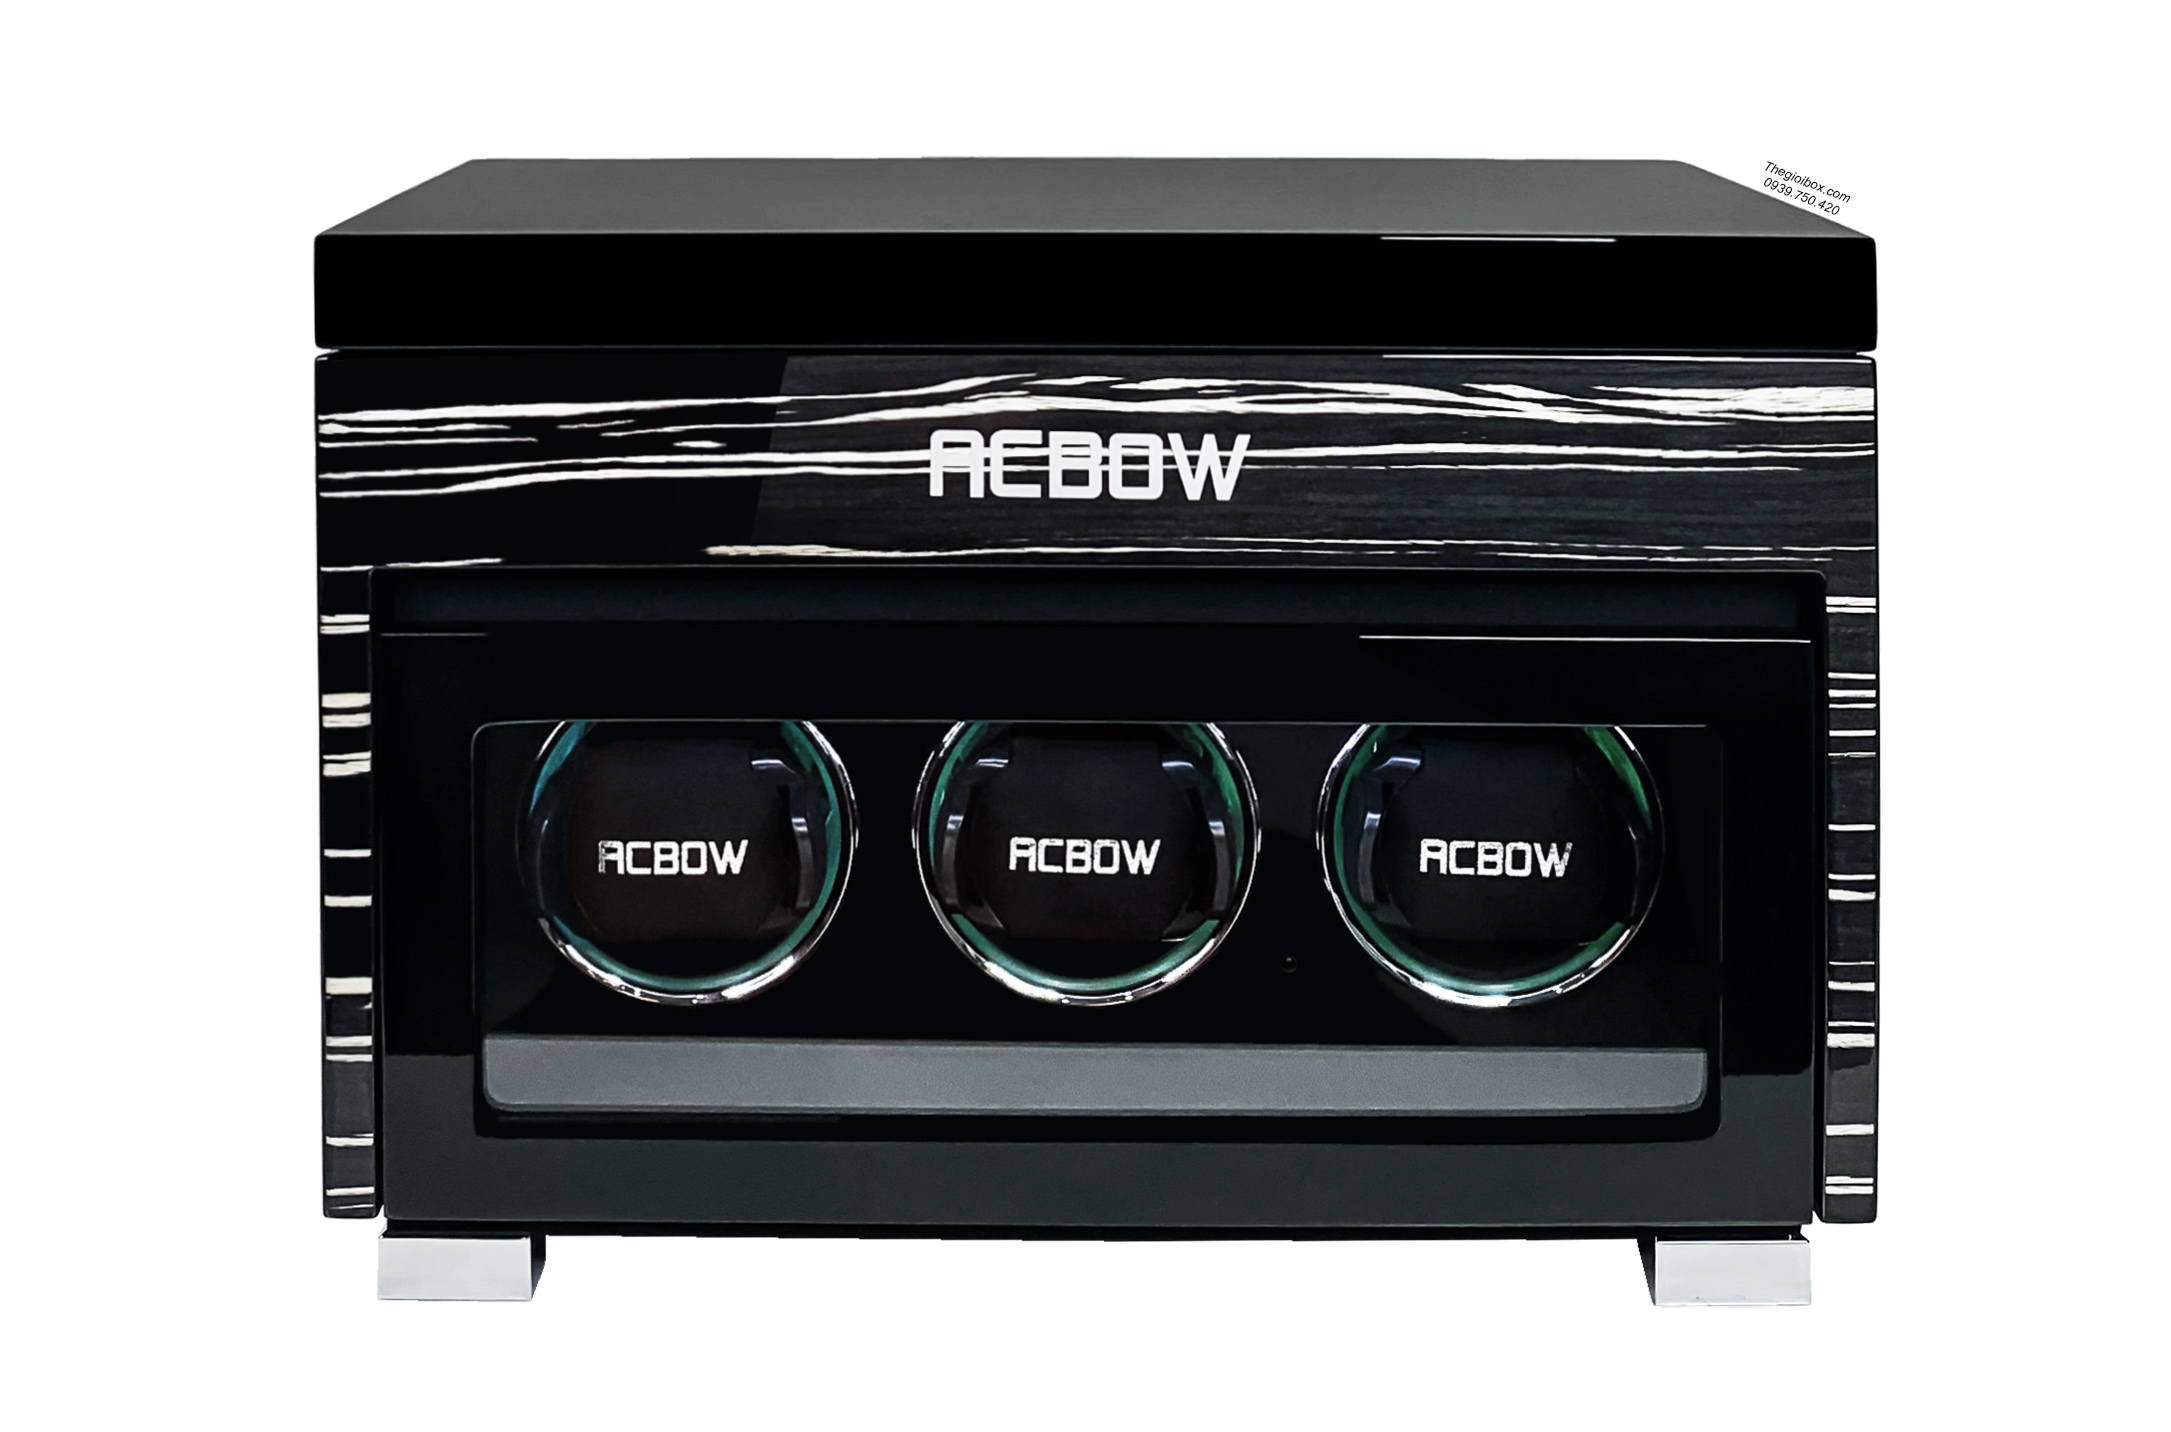 Tủ Hộp đựng đồng hồ cơ ACBOW dòng IW 3 xoay 6 tĩnh kèm remote - màn hình cảm ứng - đèn LED cao cấp